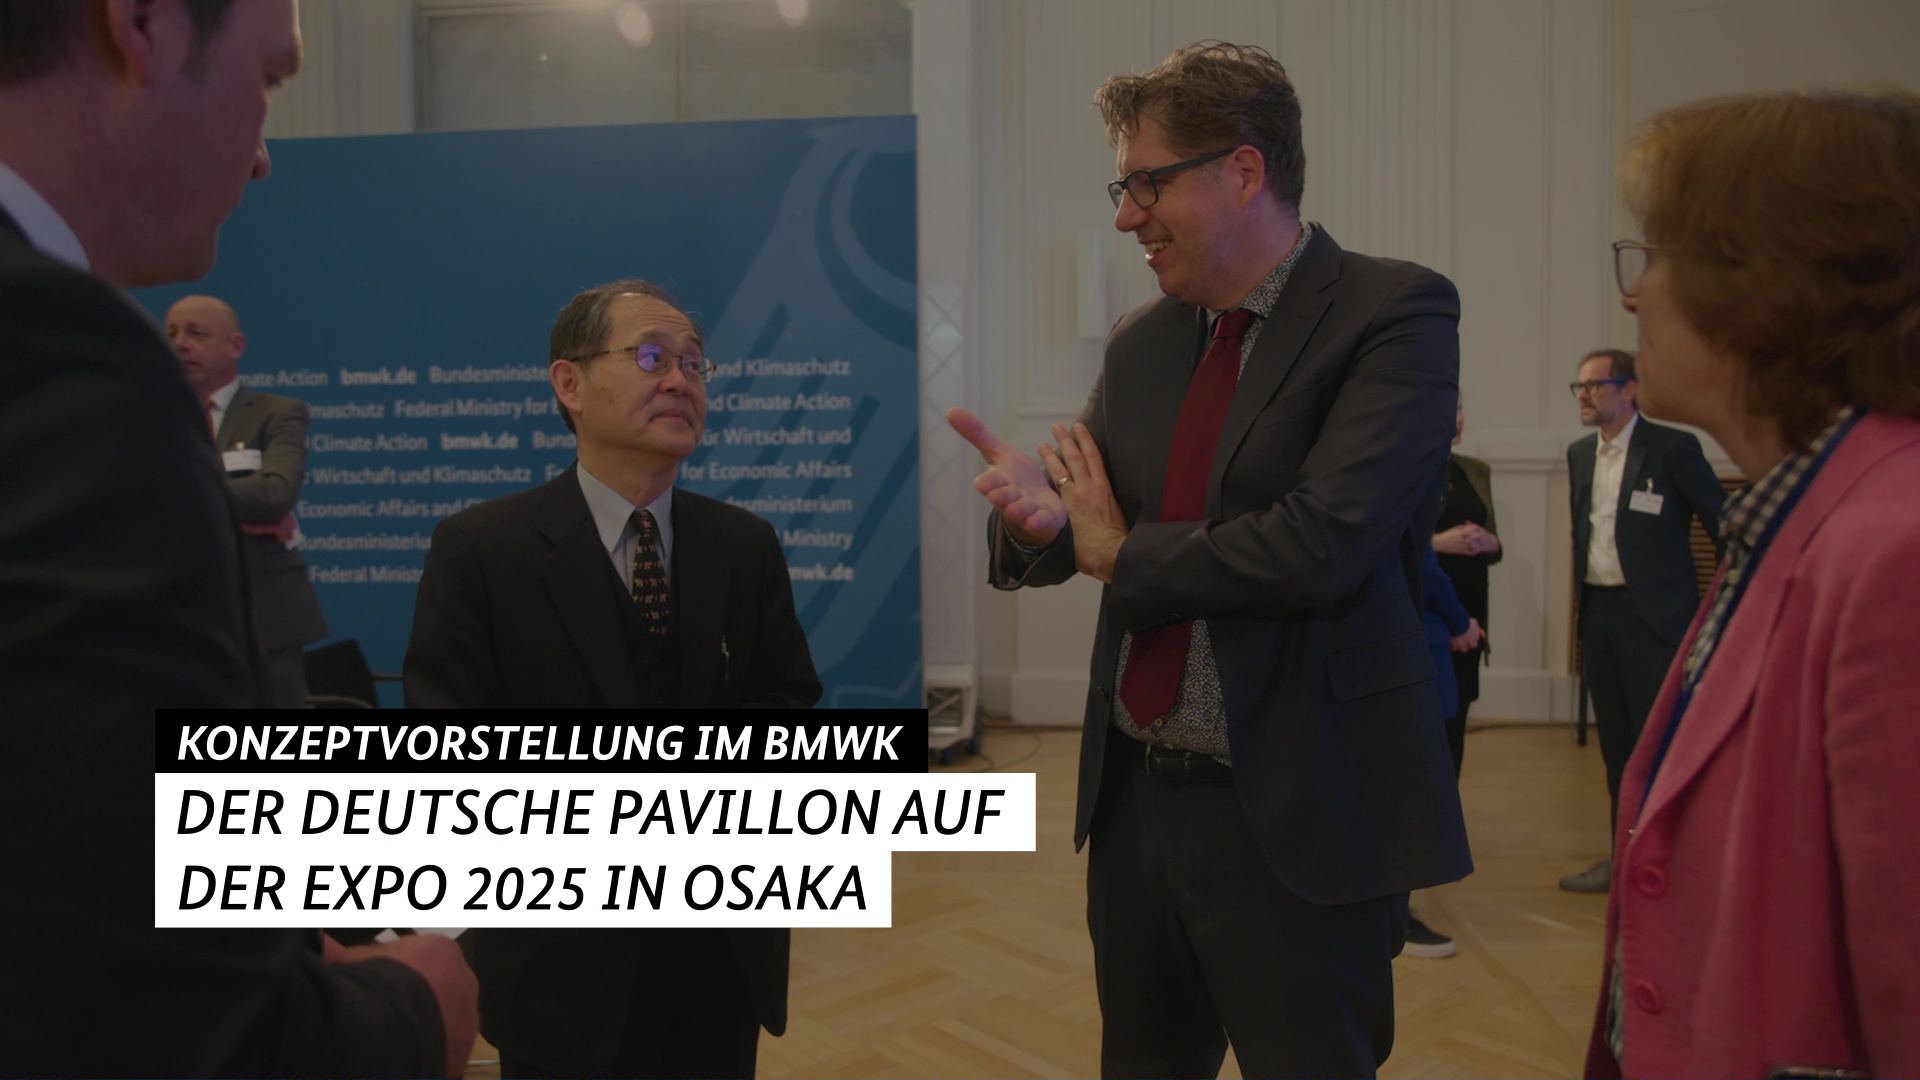 Video zur Konzeptvorstellung des Deutschen Pavillon für die EXPO 2025